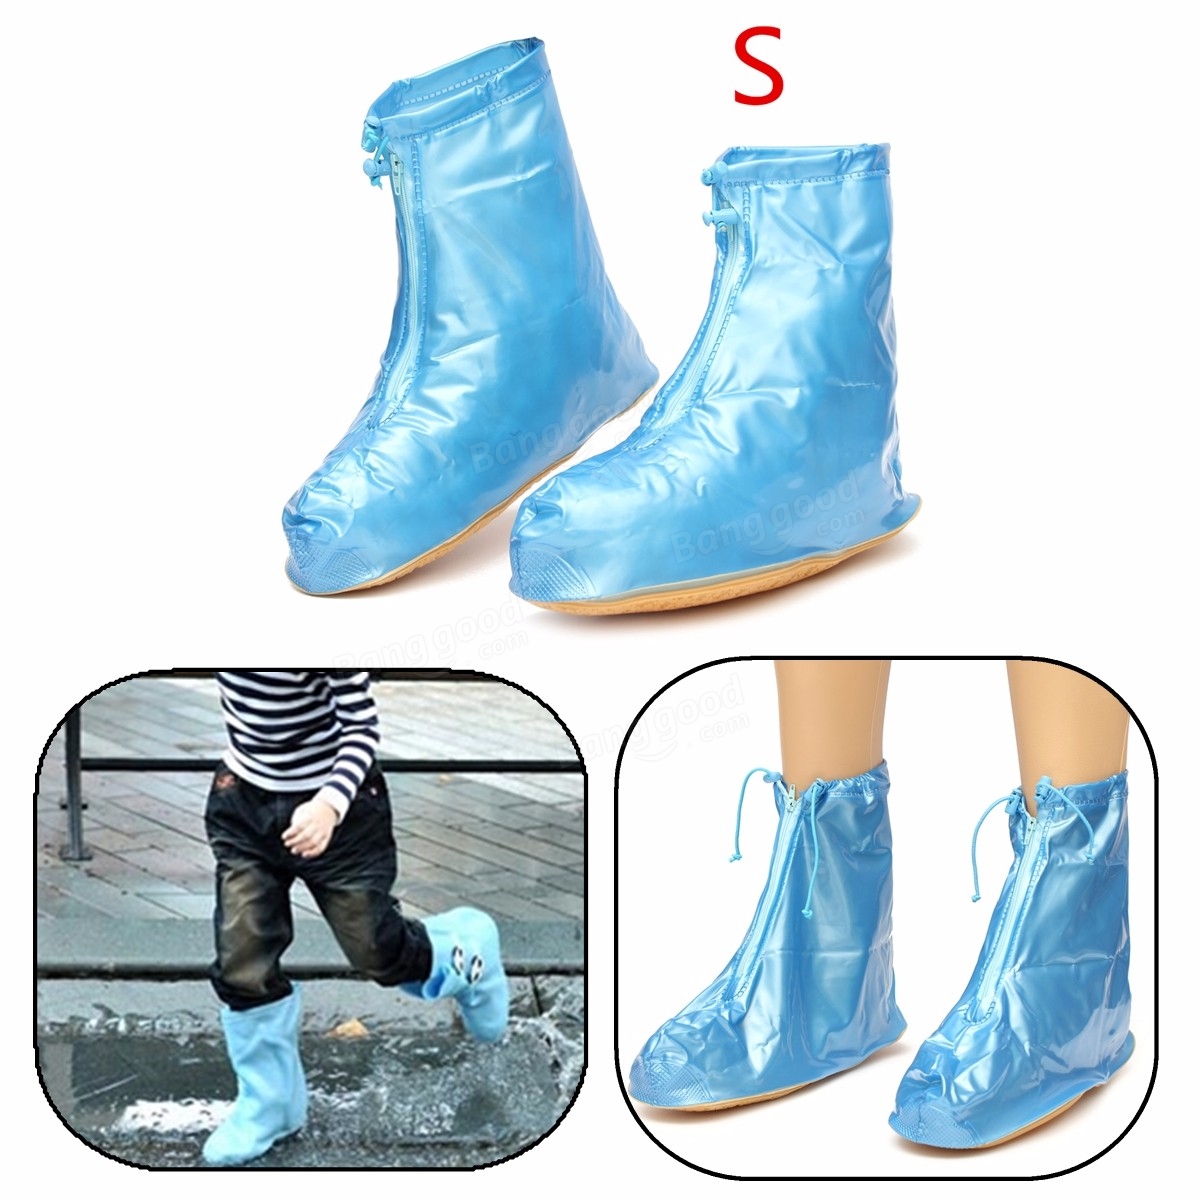 S M L XL Size Women Waterproof Shoe Covers Flattie Rain Rainproof Zip ...